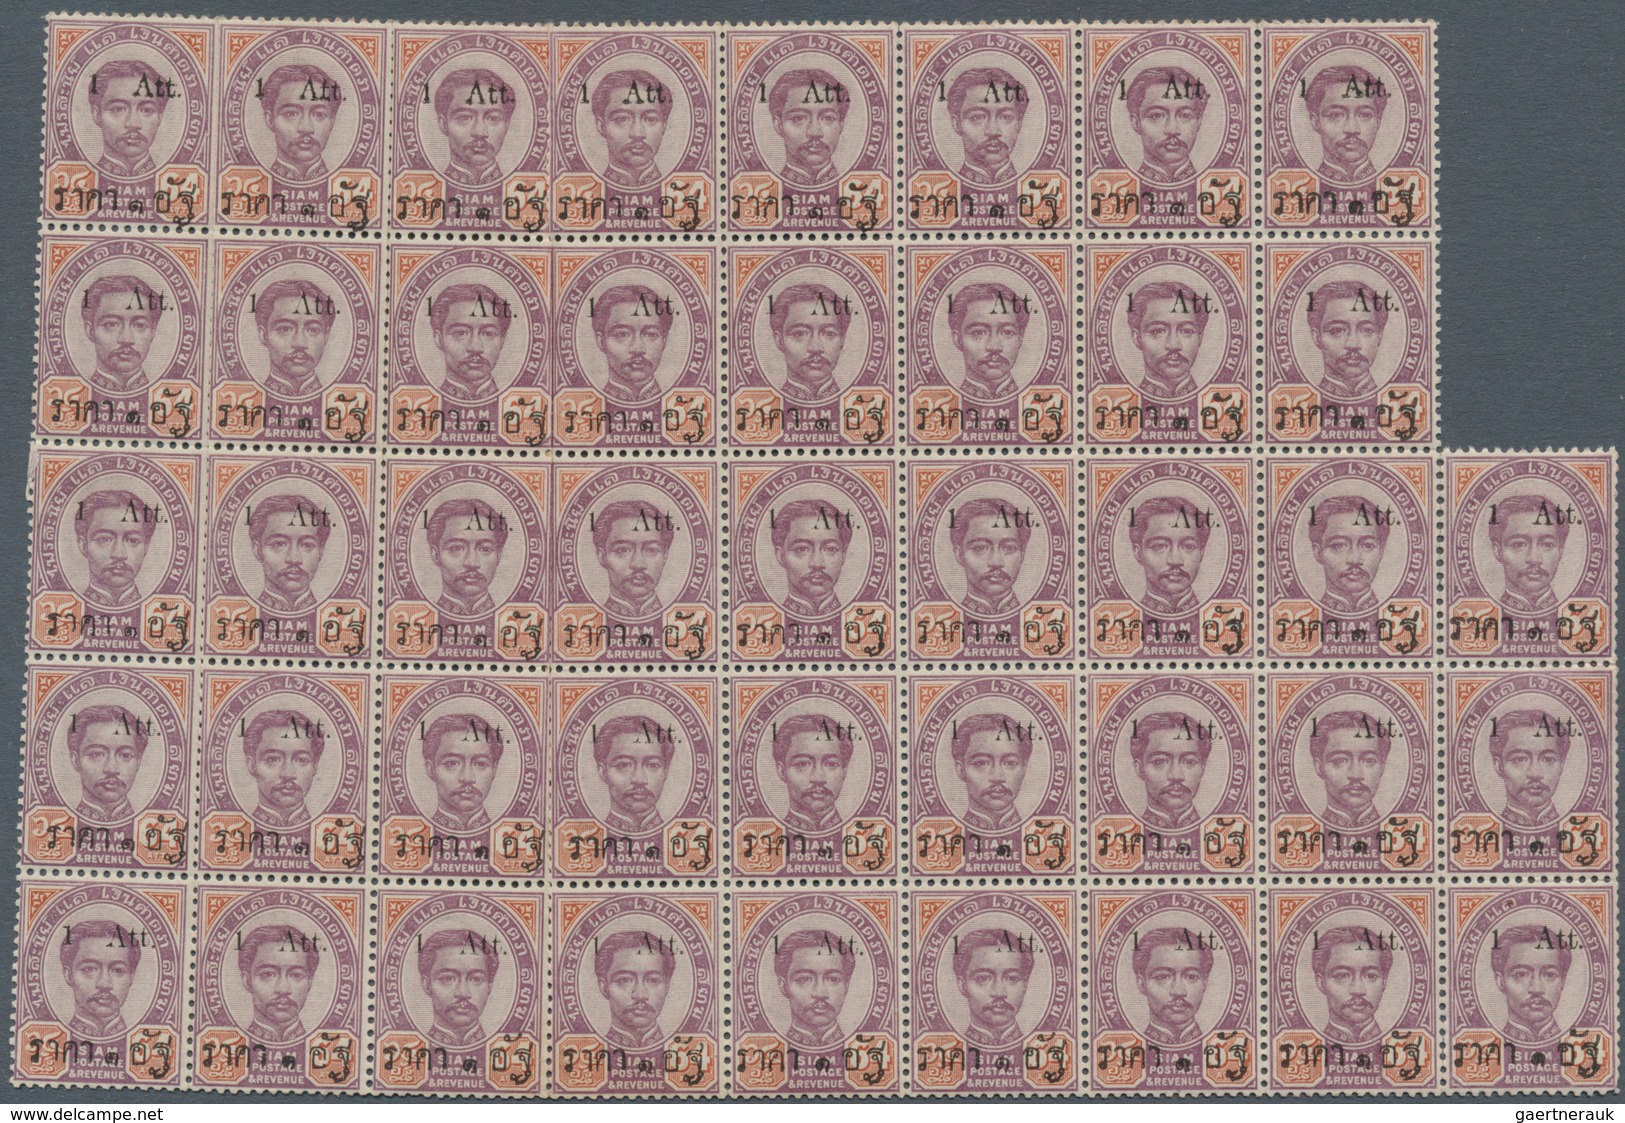 Thailand: 1894, 1 Att. On 64 Att Unmounted Mint Block Of 43. - Tailandia